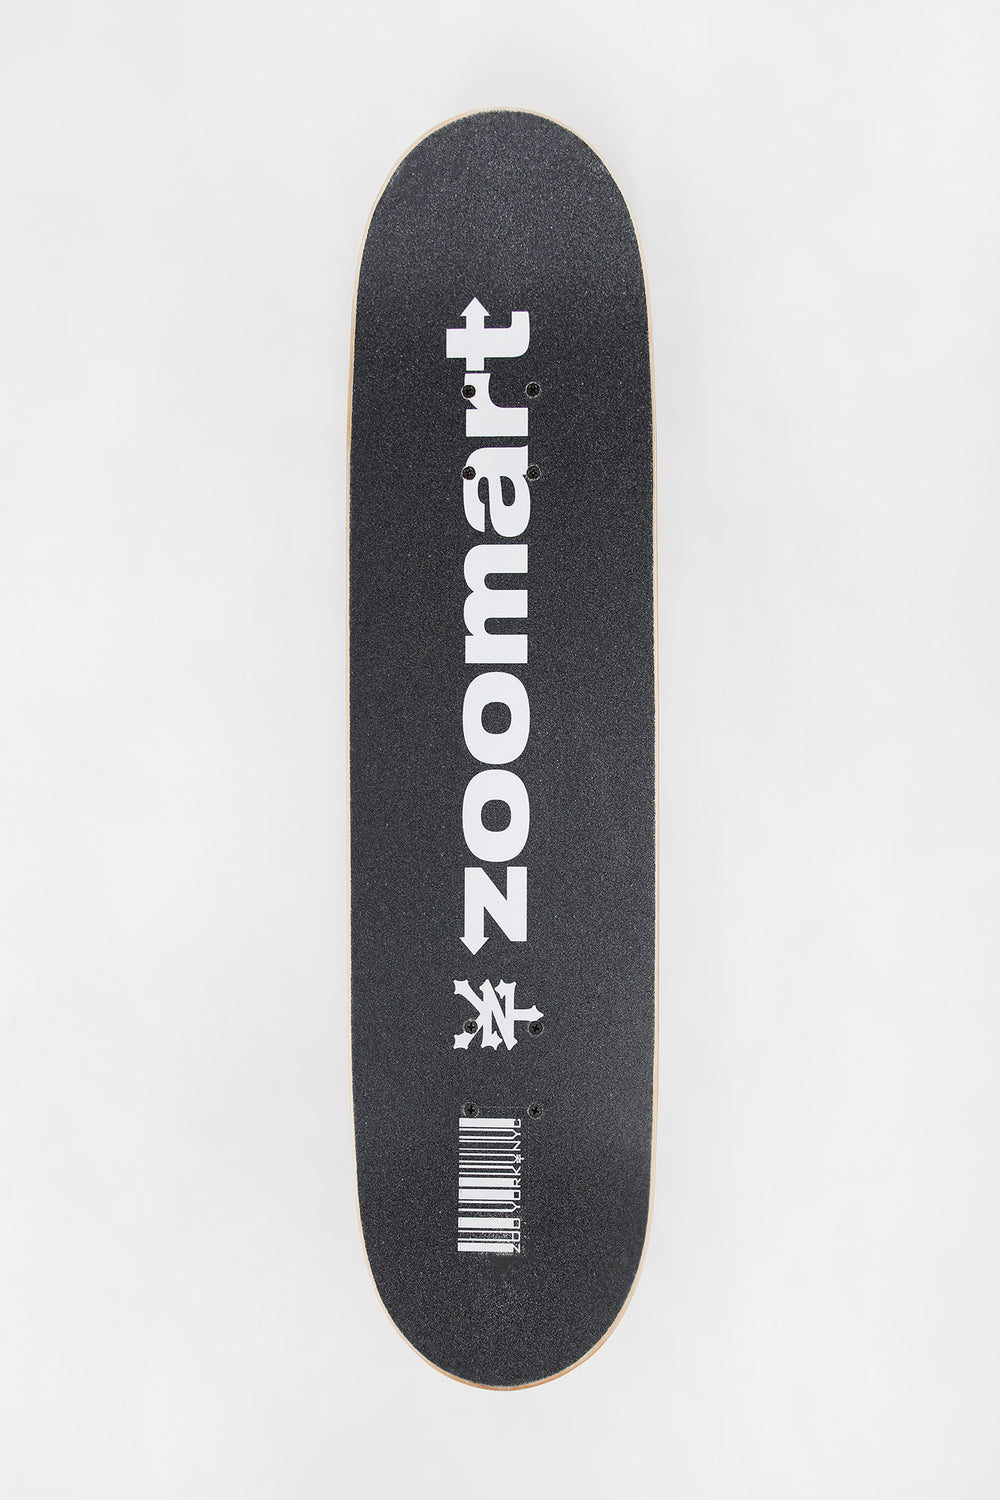 Skateboard Imprimé Zoomart Zoo York 7.75